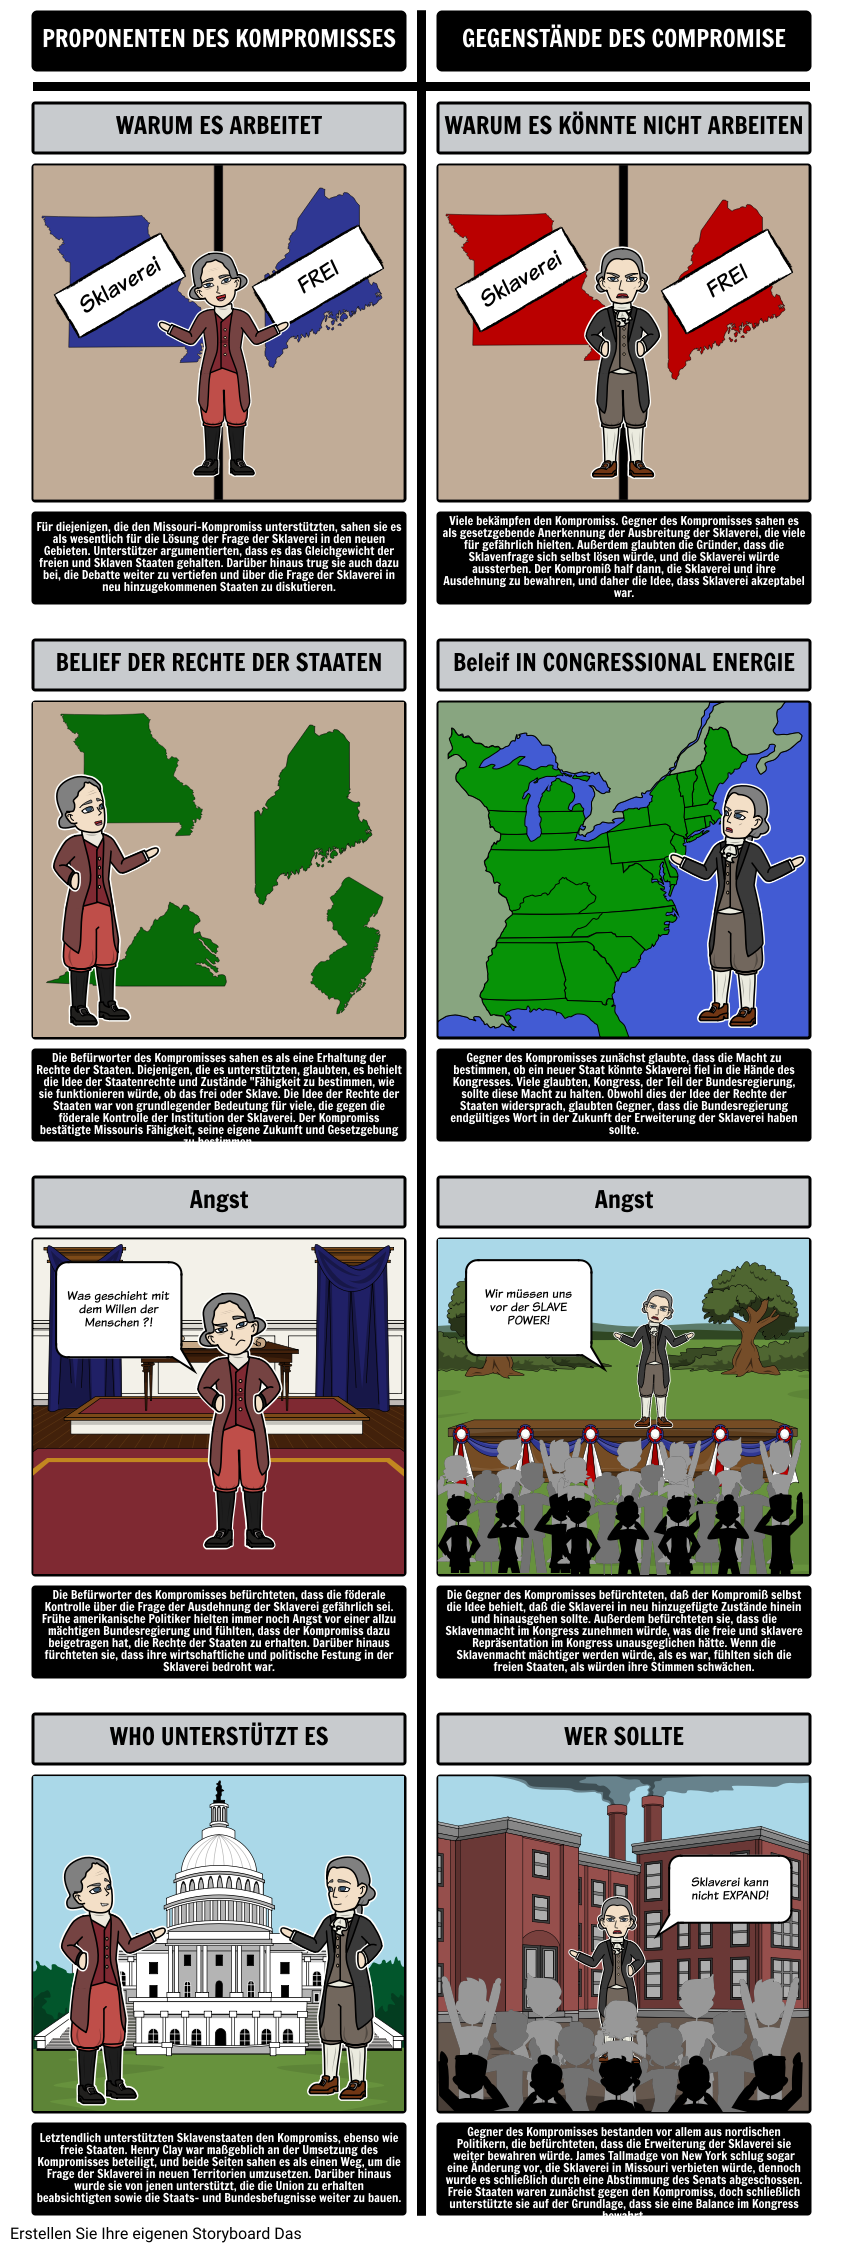 Der Missouri-Kompromiss von 1820 - Befürworter und Gegner